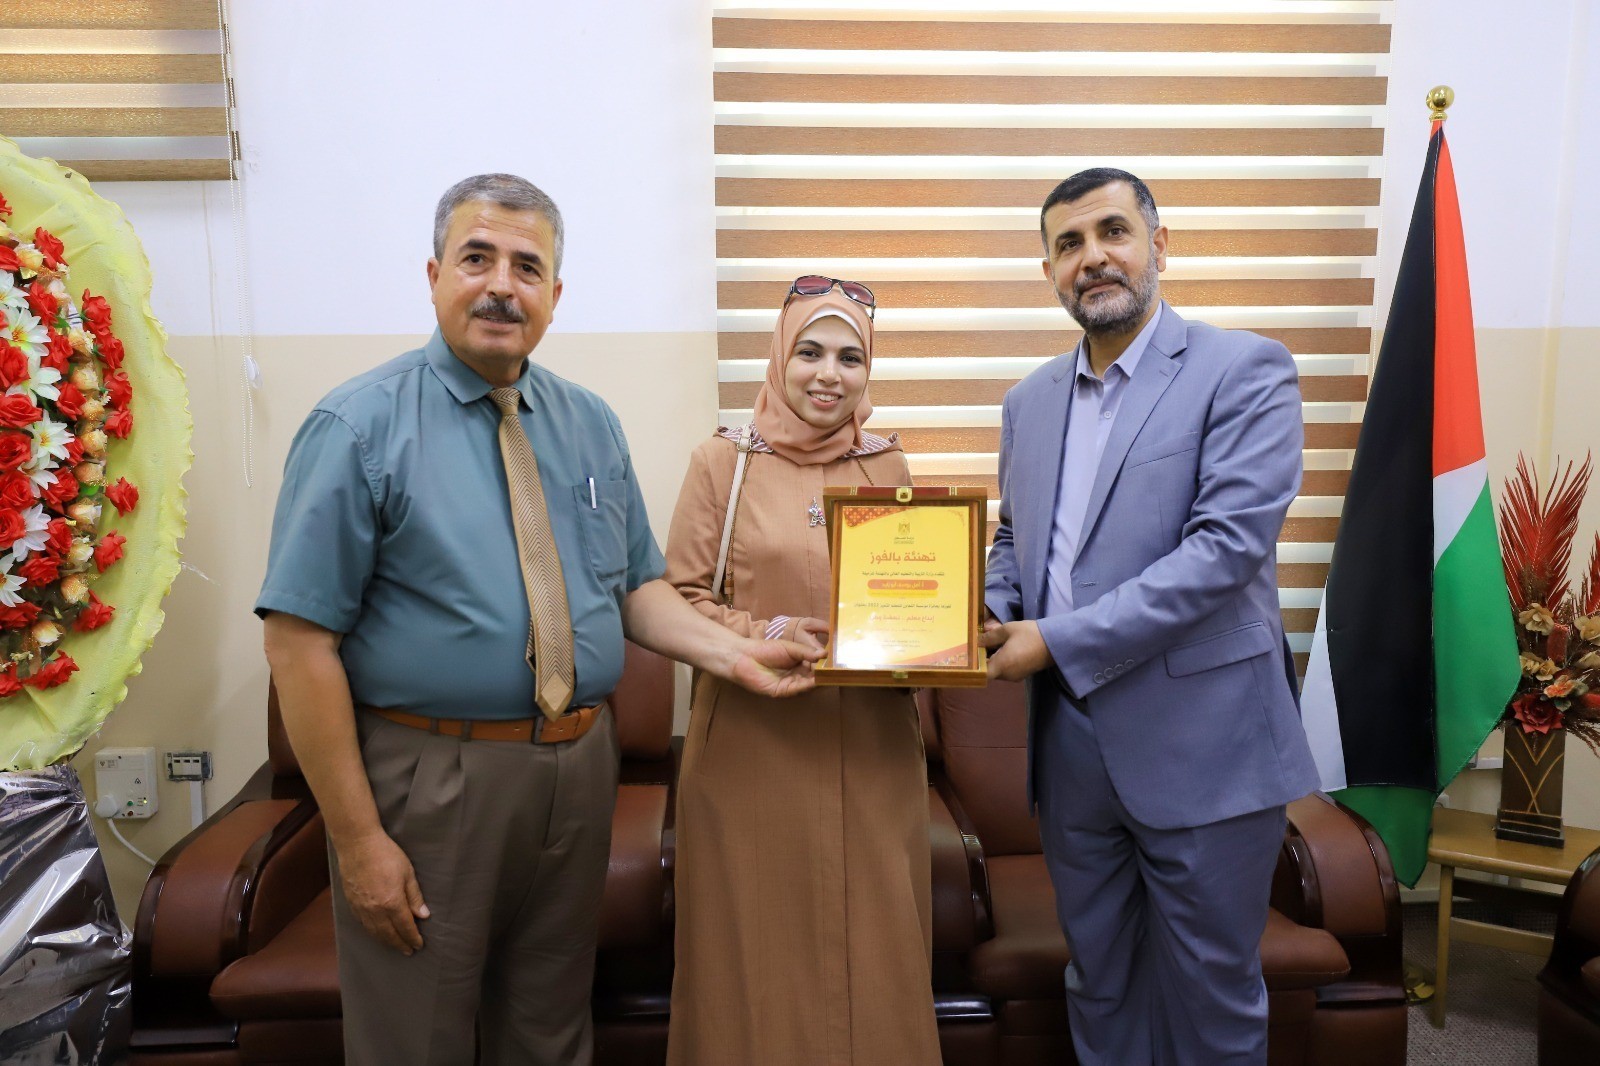 فوز معلمتين من غزة بجائزة مؤسسة التعاون للمعلم المتميز